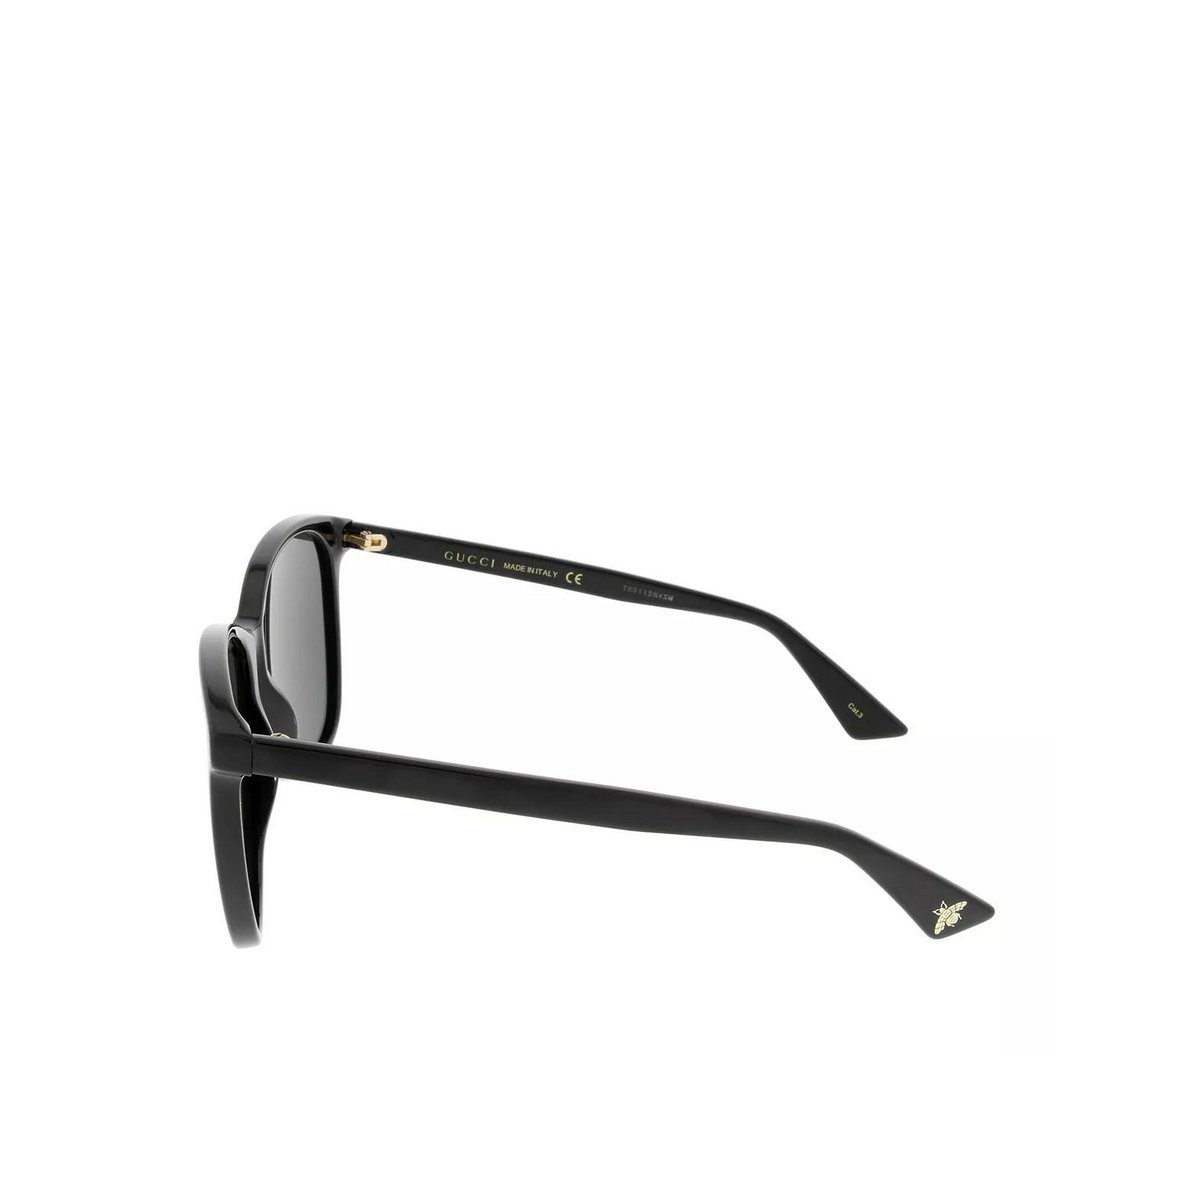 GUCCI schwarz Sonnenbrille (1-St)